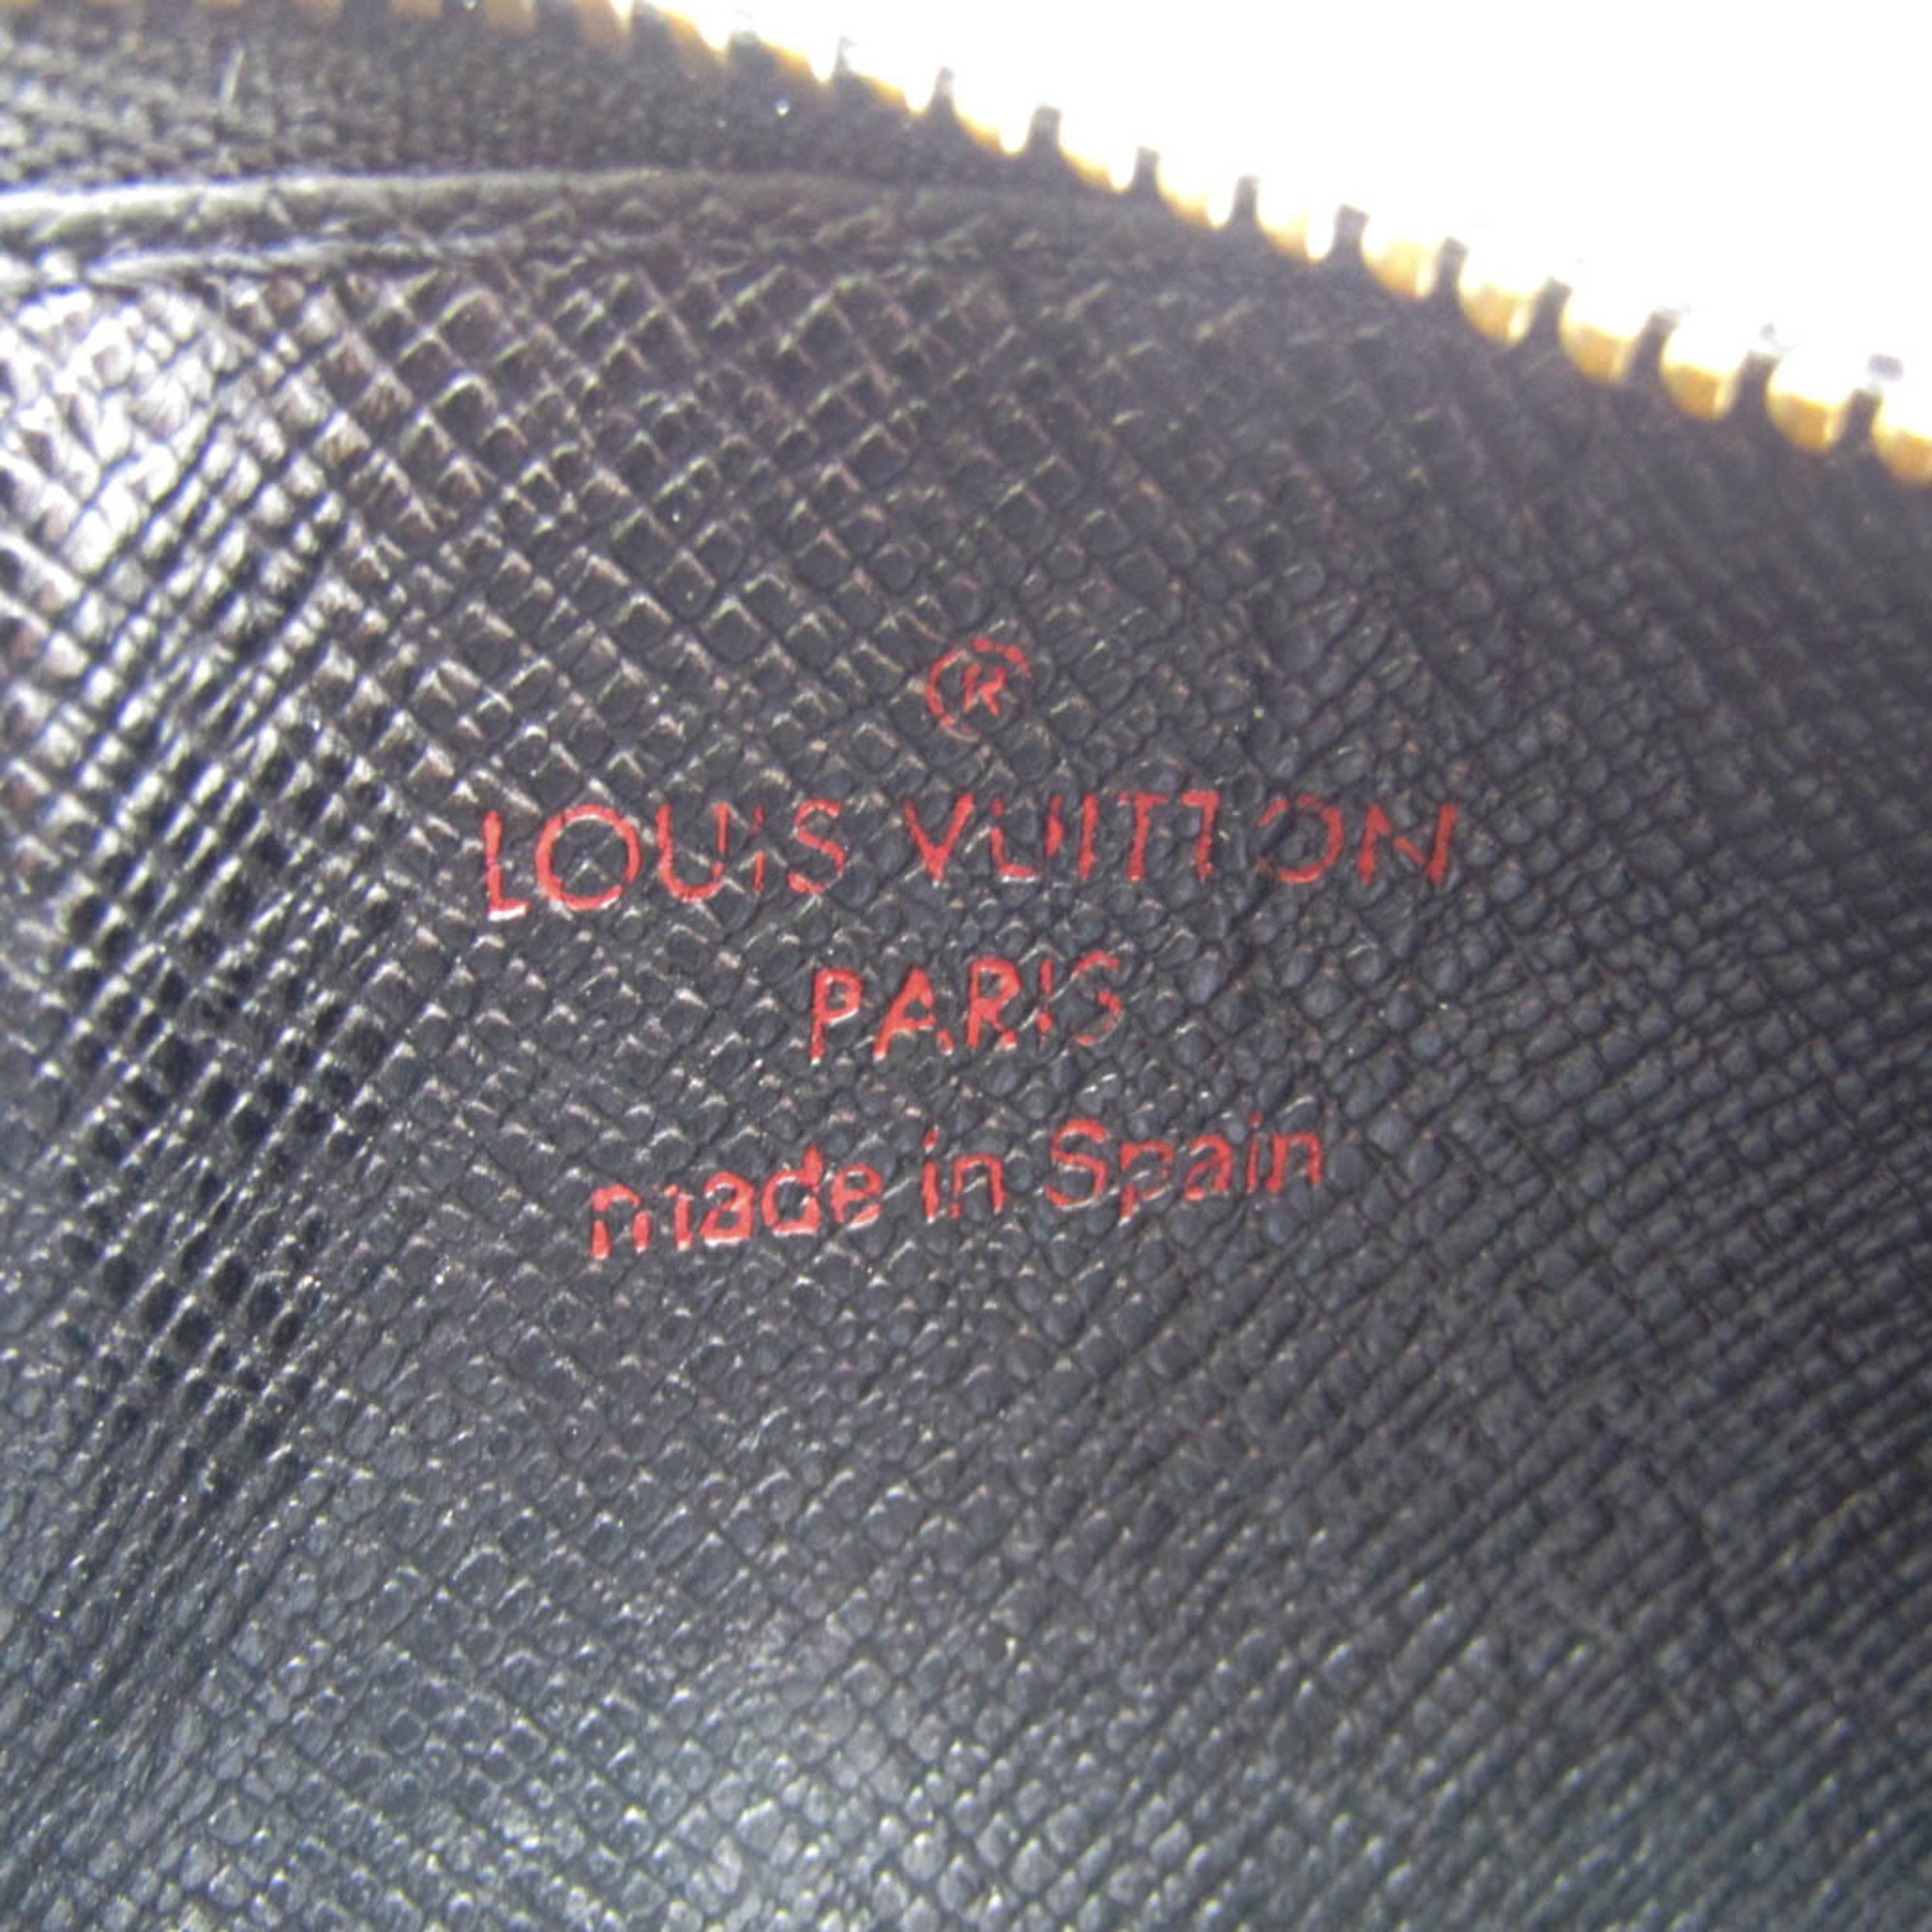 Louis Vuitton Epi Pochette Cle M63802 Women,Men Epi Leather Coin Purse/coin Case Noir